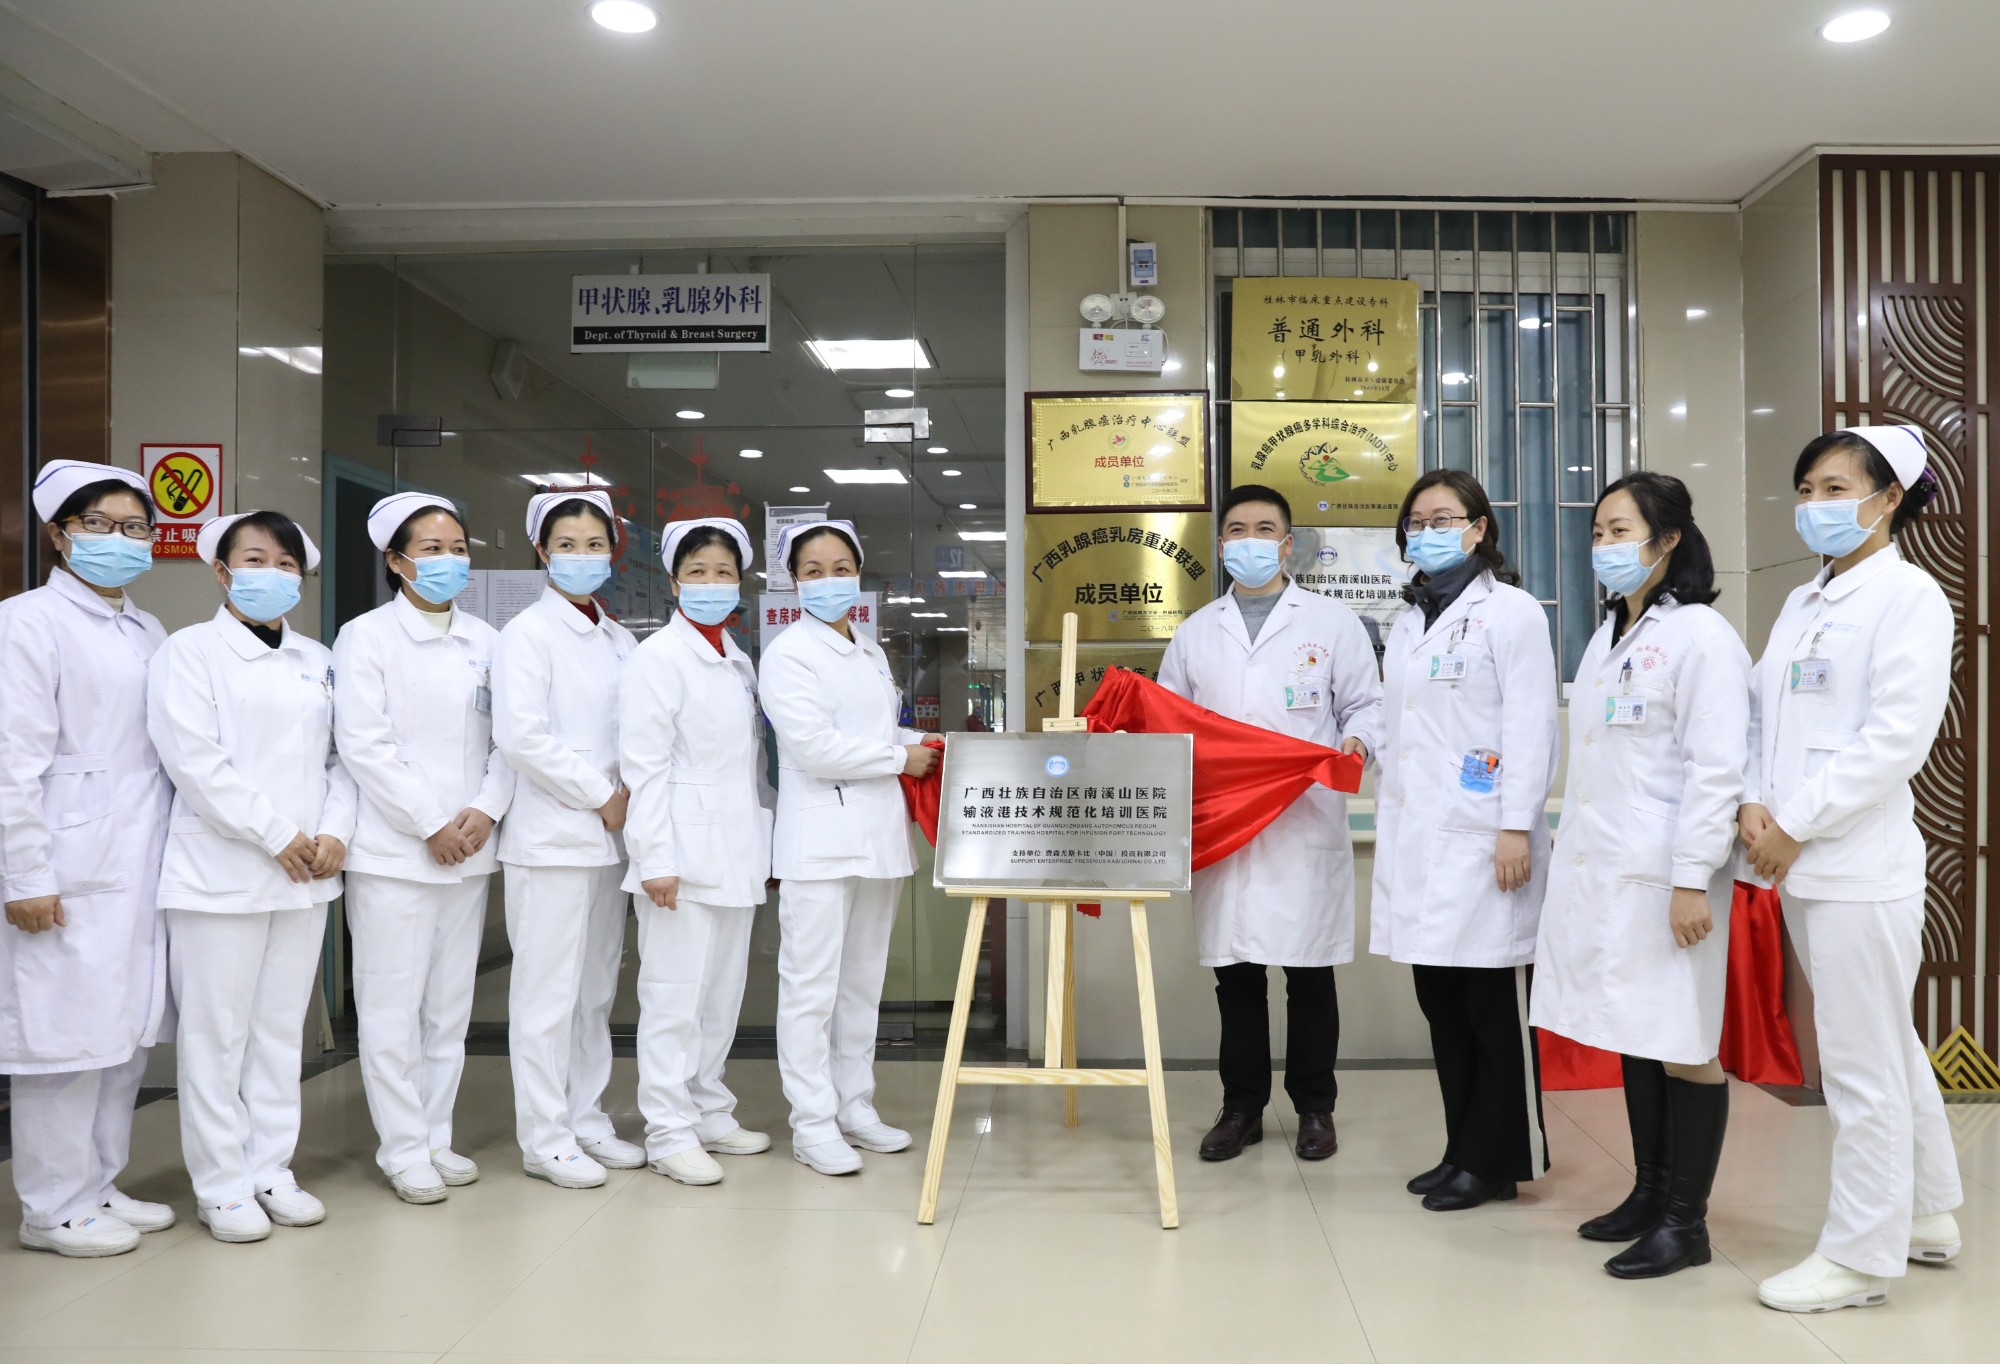 桂林首家输液港技术规范化培训医院正式挂牌